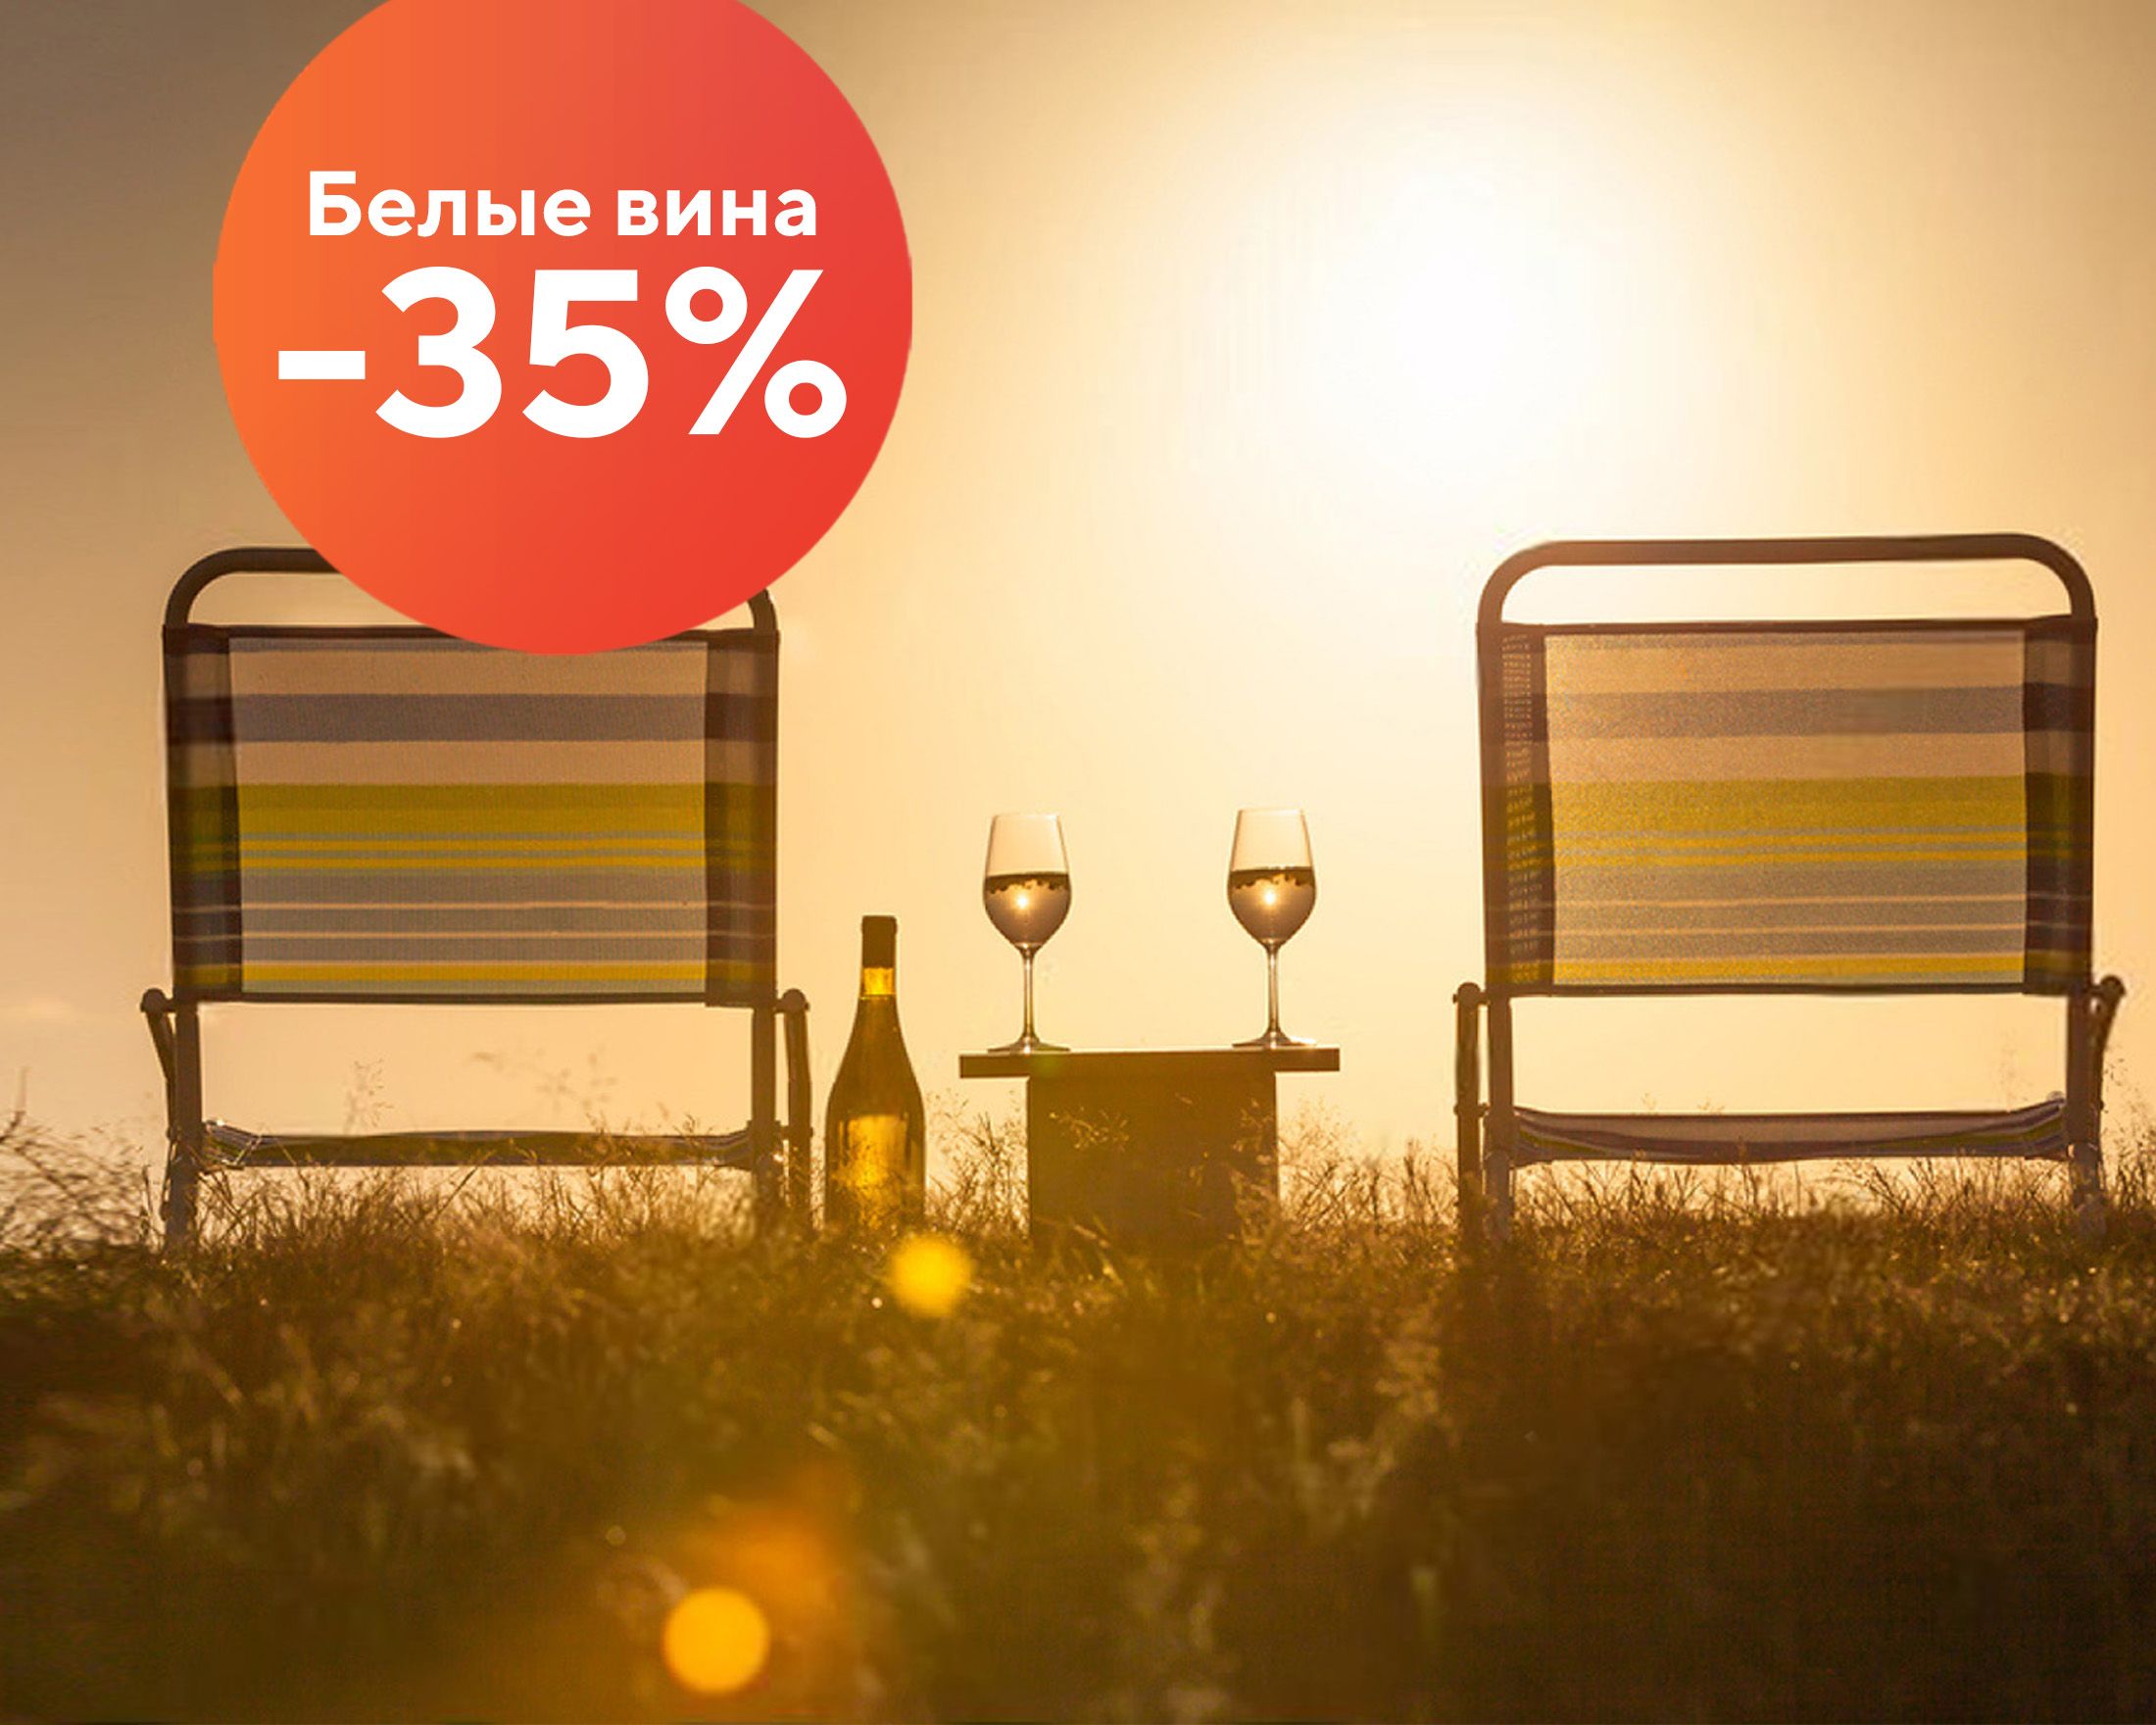 Акция: Белые вина 35%